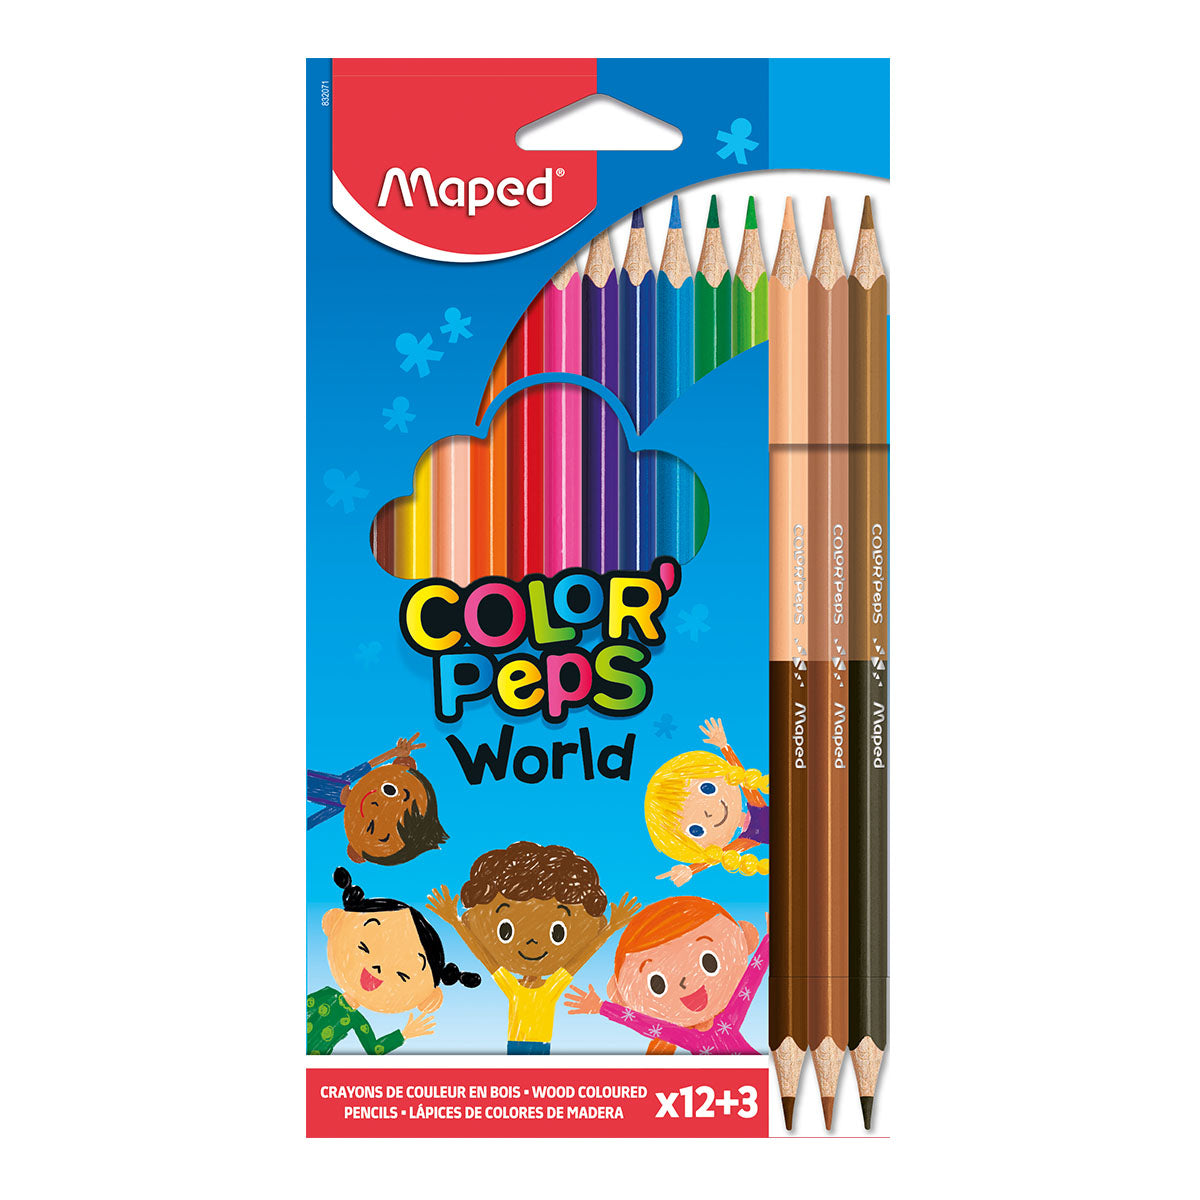 MAPED Color'Peps - Caja de 12 Lápices de Colores. Incluye 3 Lápices Duo Color Piel